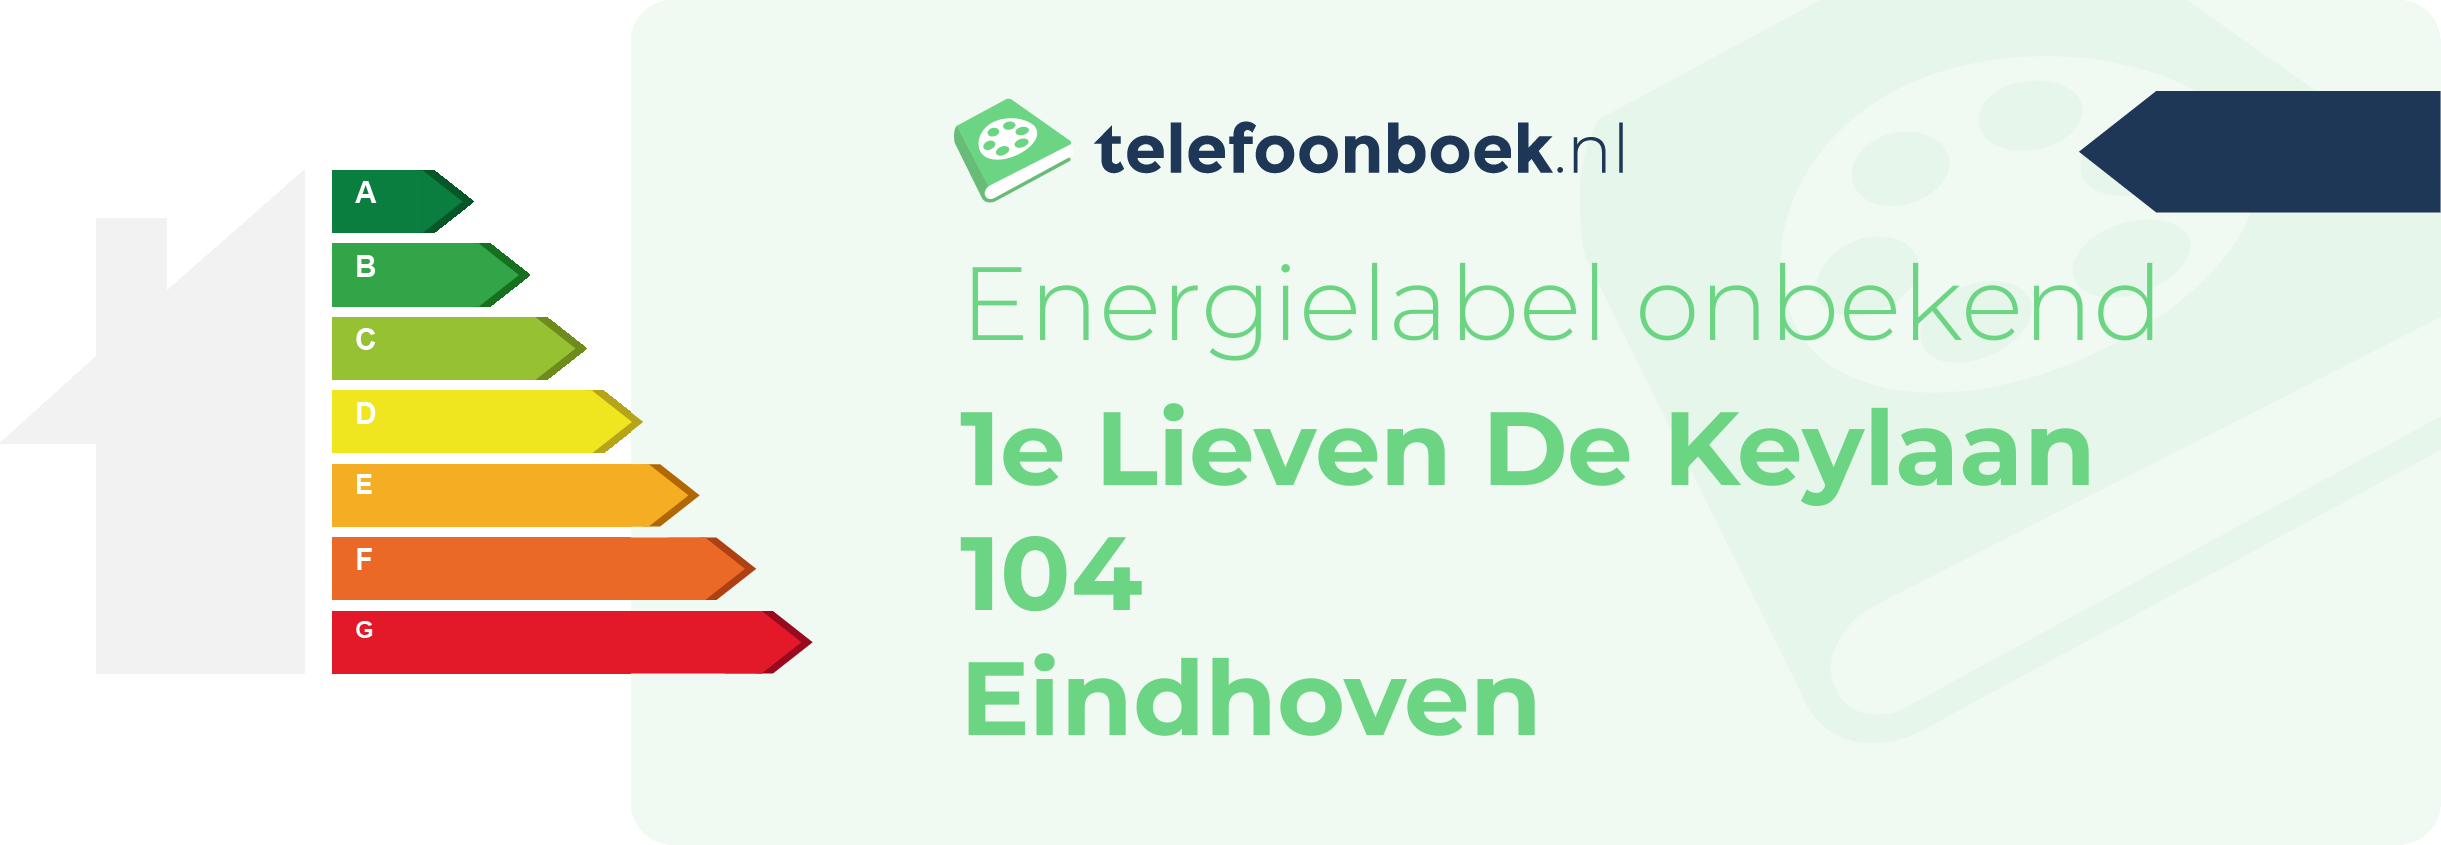 Energielabel 1e Lieven De Keylaan 104 Eindhoven